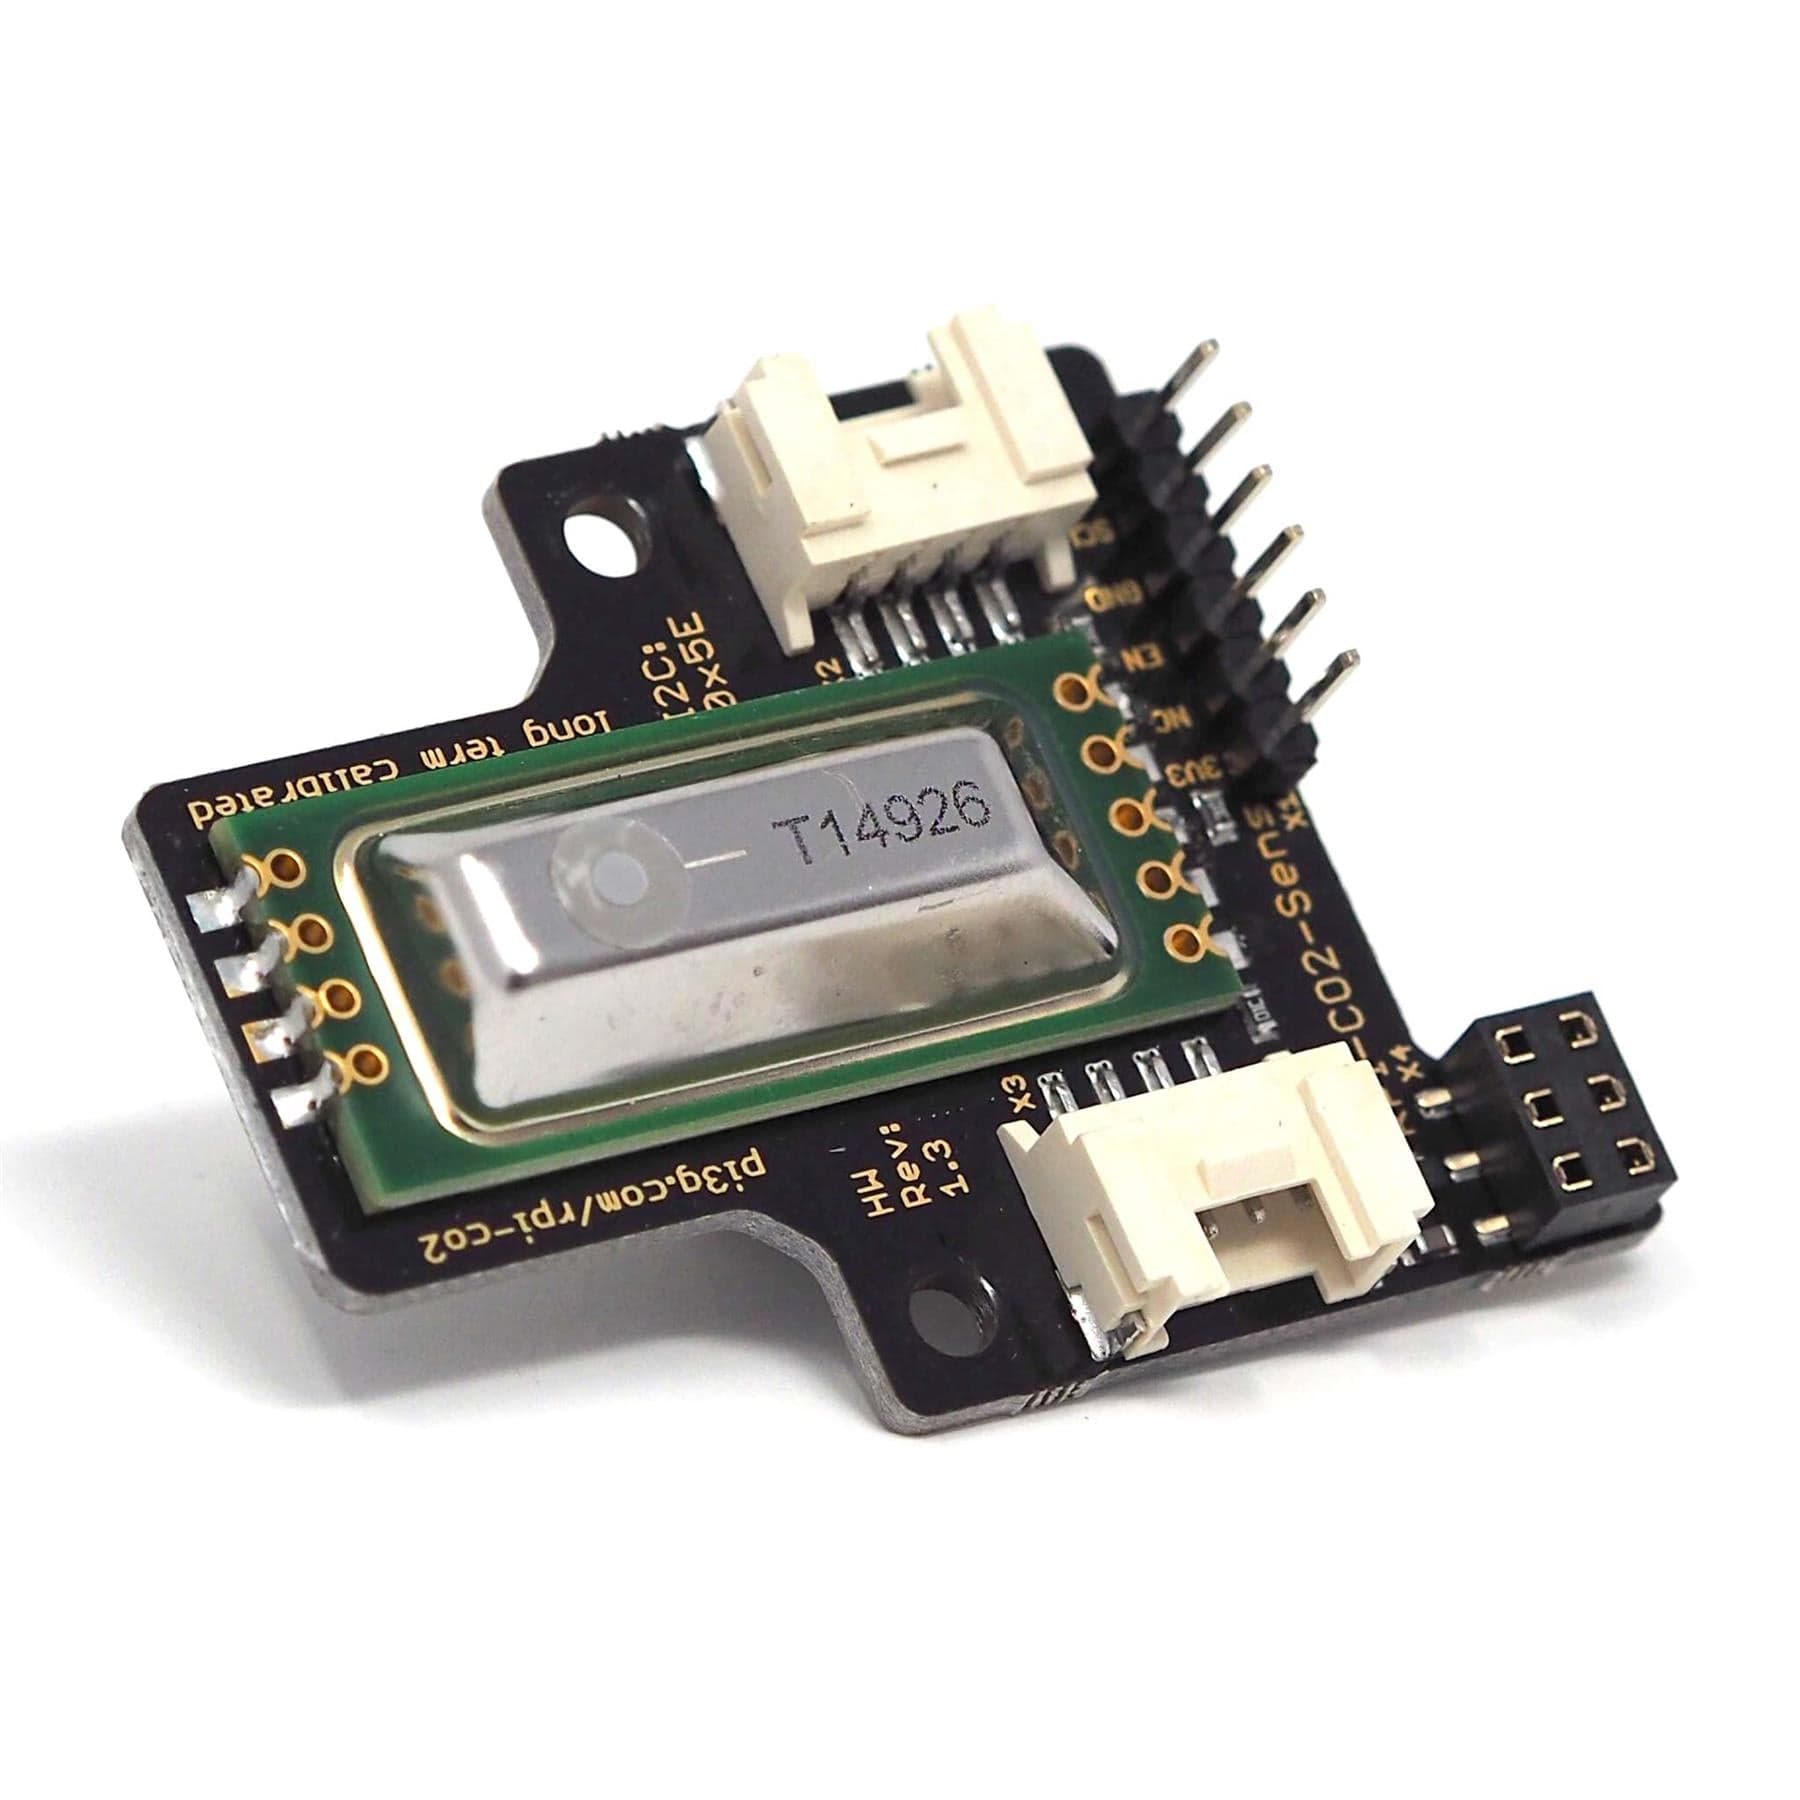 Advanced CO2 Sensor Breakout Board for Raspberry Pi - The Pi Hut